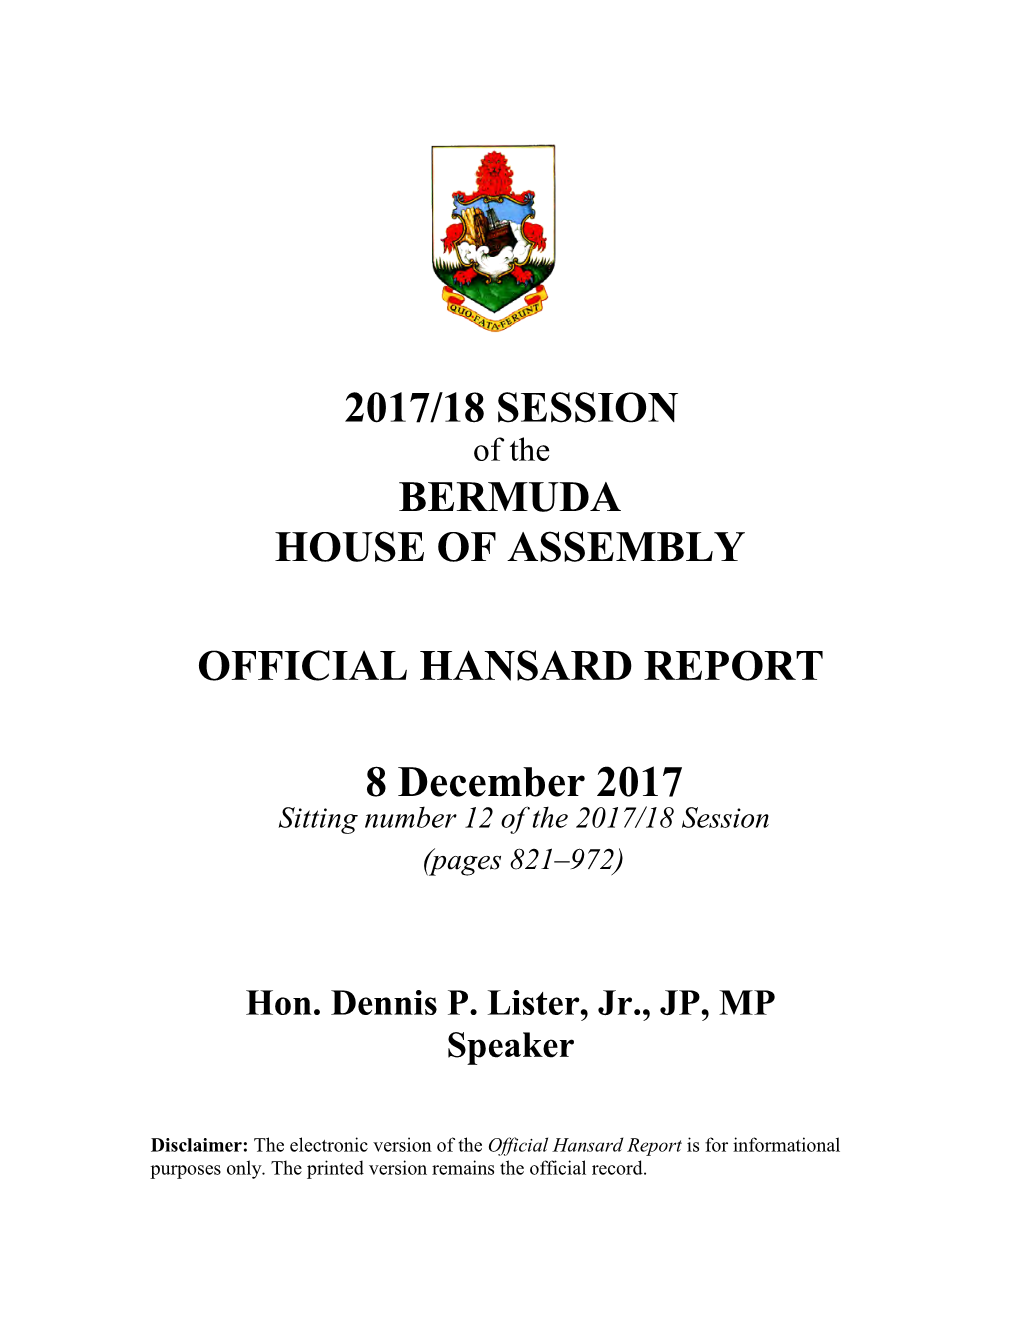 Hansard 8 December 2017